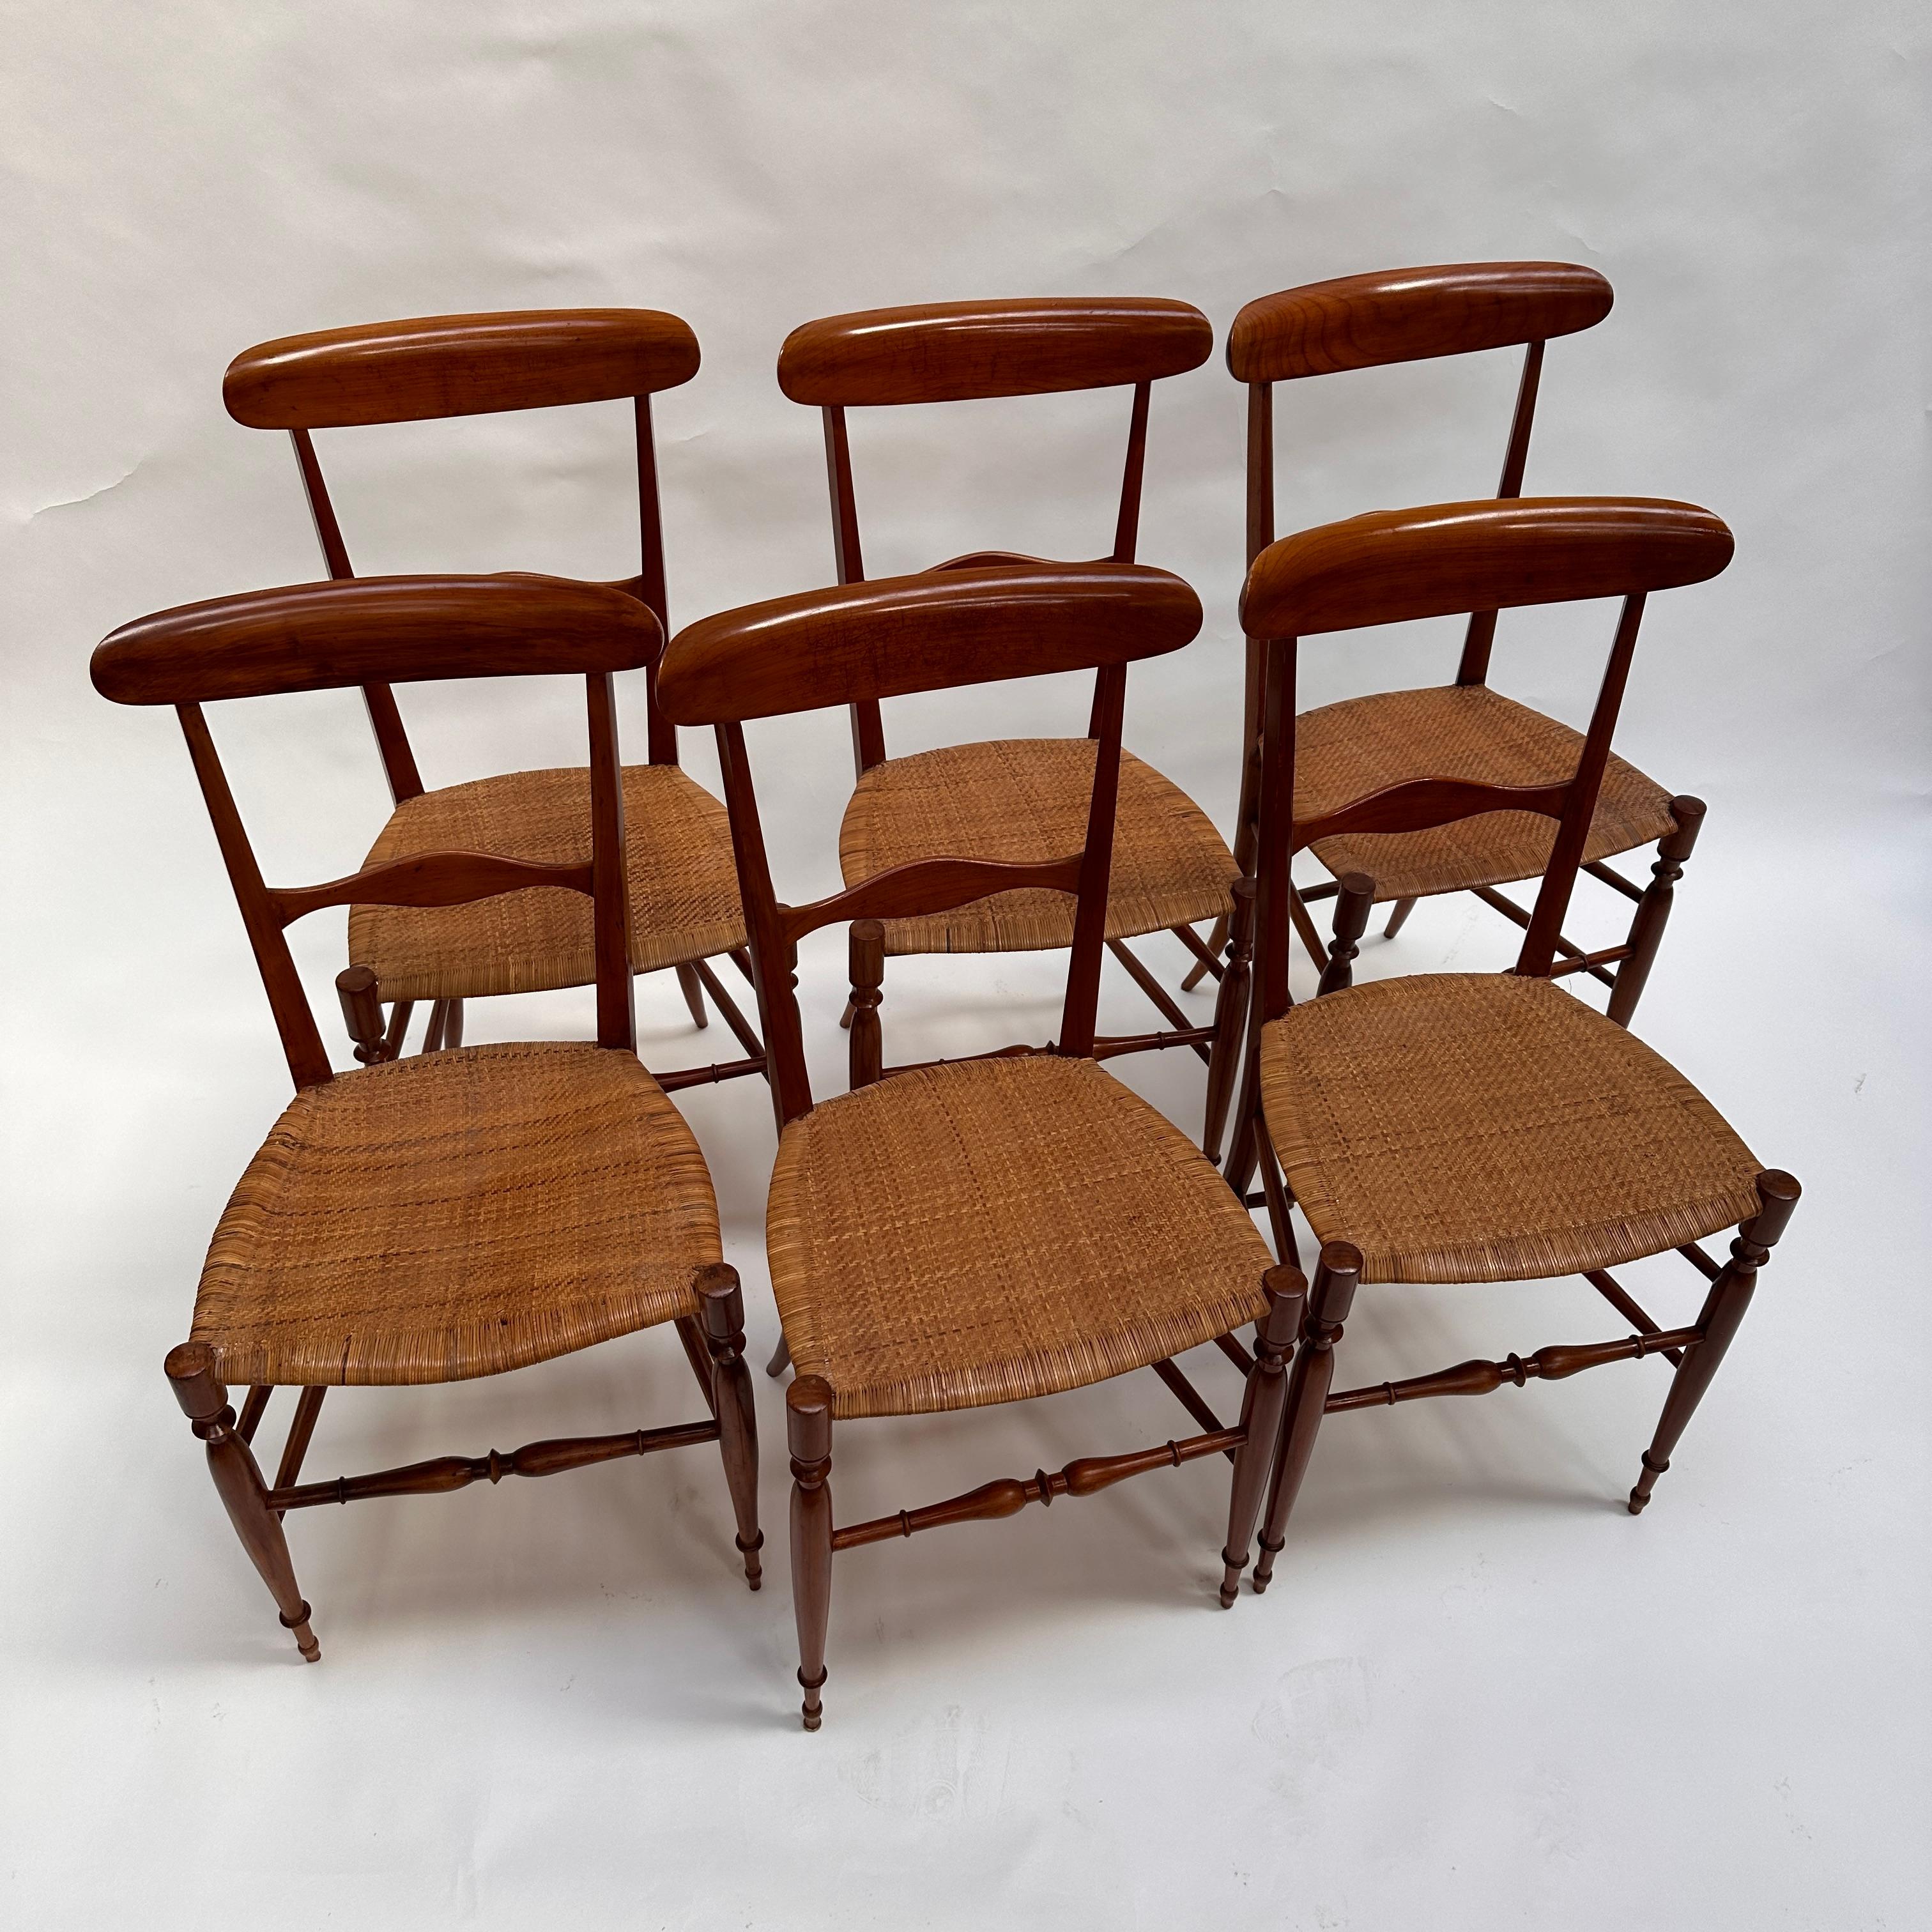 Très célèbre chaises dan le monde entier, la chaise Chiavari séduit depuis maintenant plus d'un demi siècle les amateurs de beaux meubles. D'une légèreté incroyable, cette chaise se soulève avec un doigt et résiste à n'importe quel poids.
C'est une